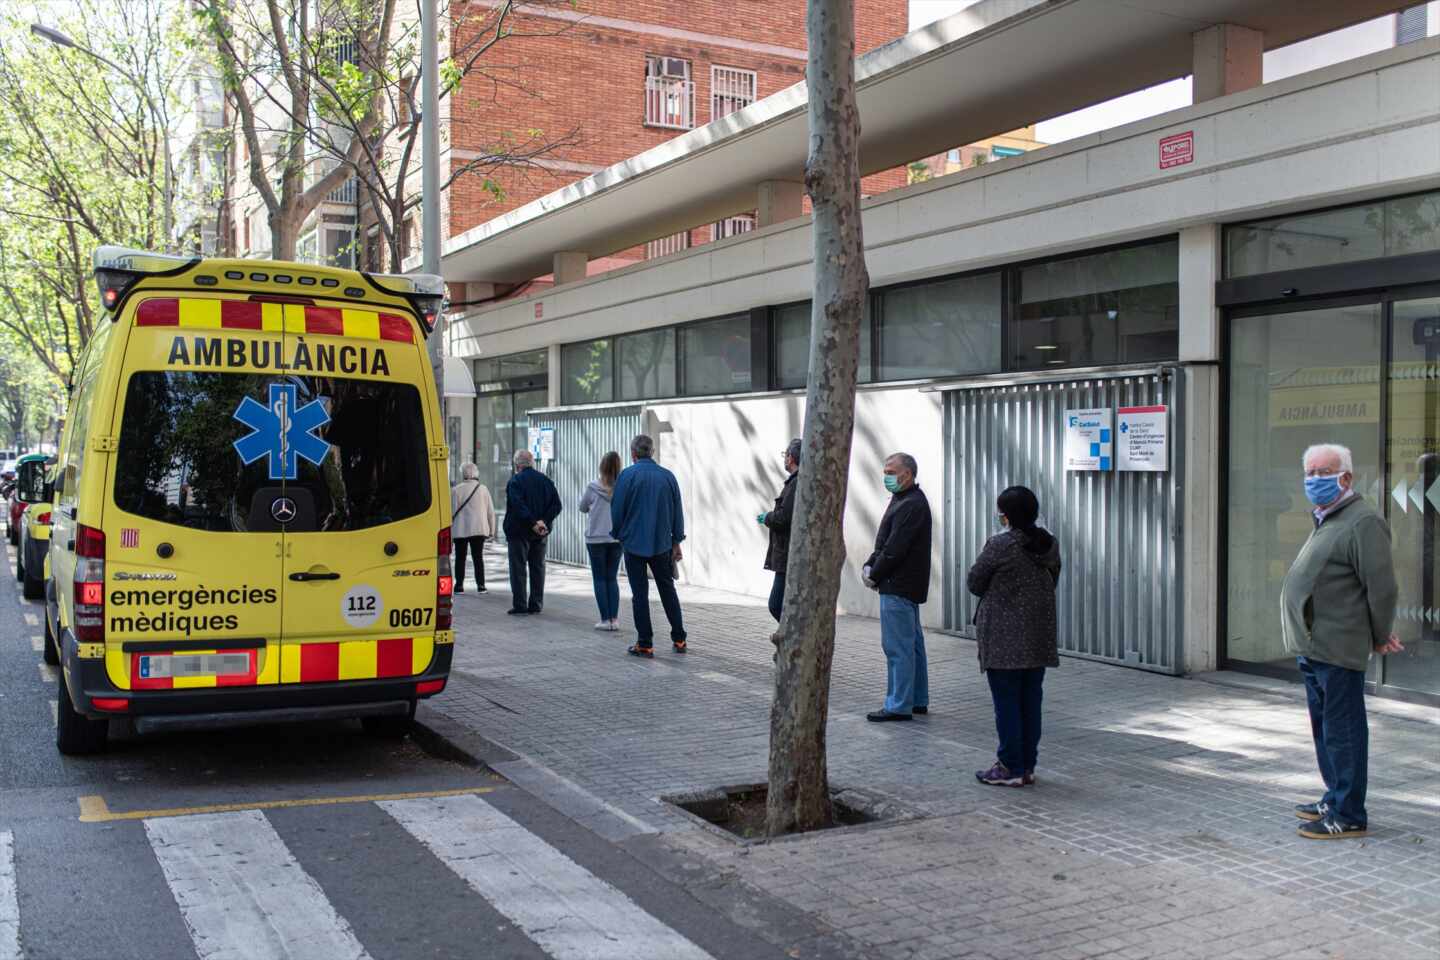 Una mujer se encuentra en estado grave tras ser atropellada en Barcelona